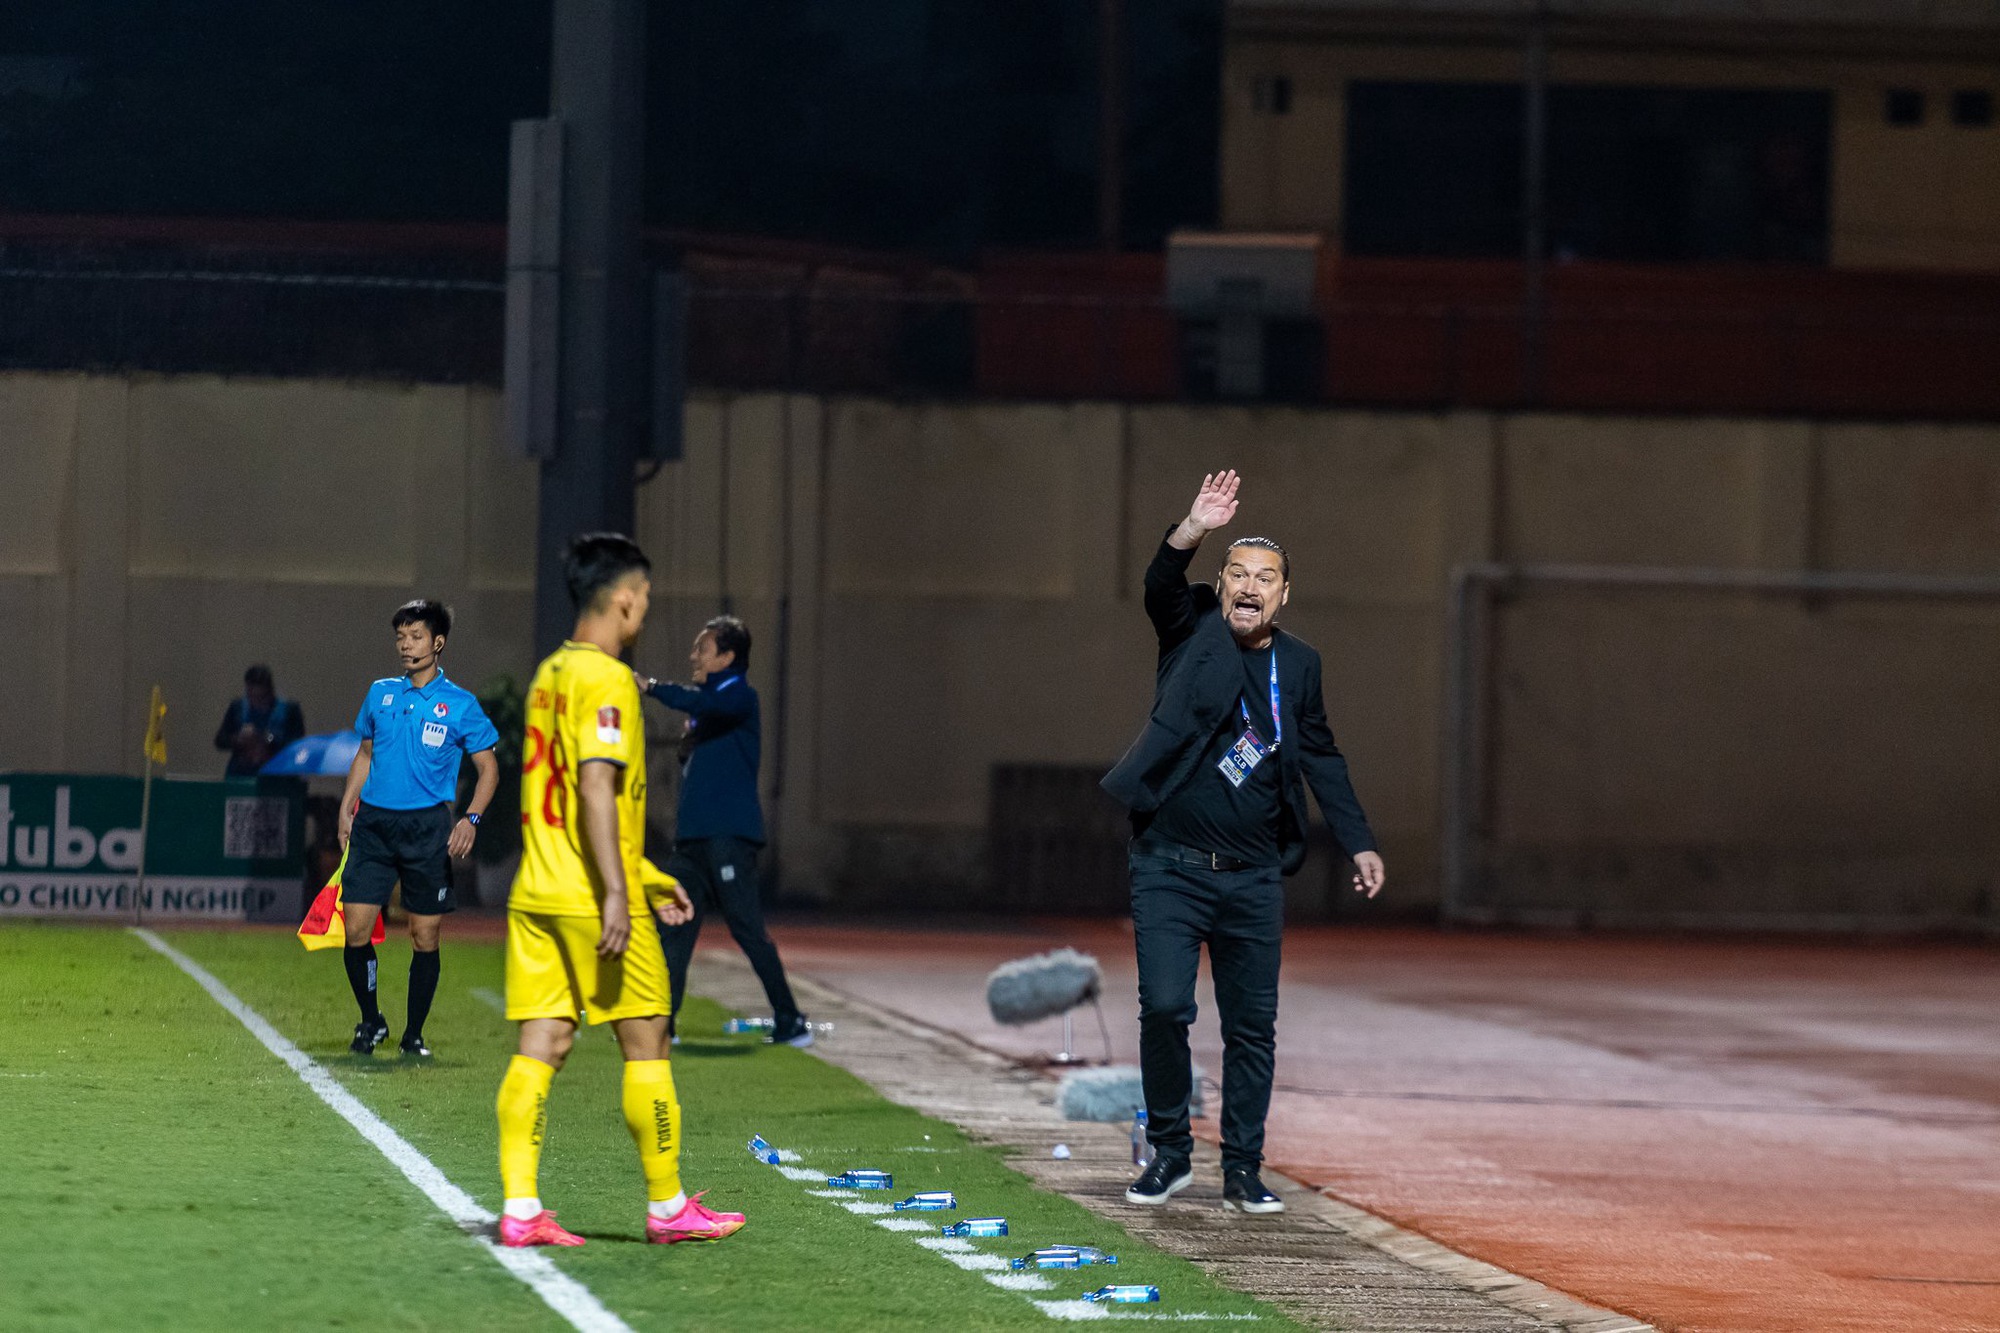 Đông Á Thanh Hoá chia điểm trên sân nhà với TP Hồ Chí Minh trong trận đấu thiếu người - Ảnh 5.